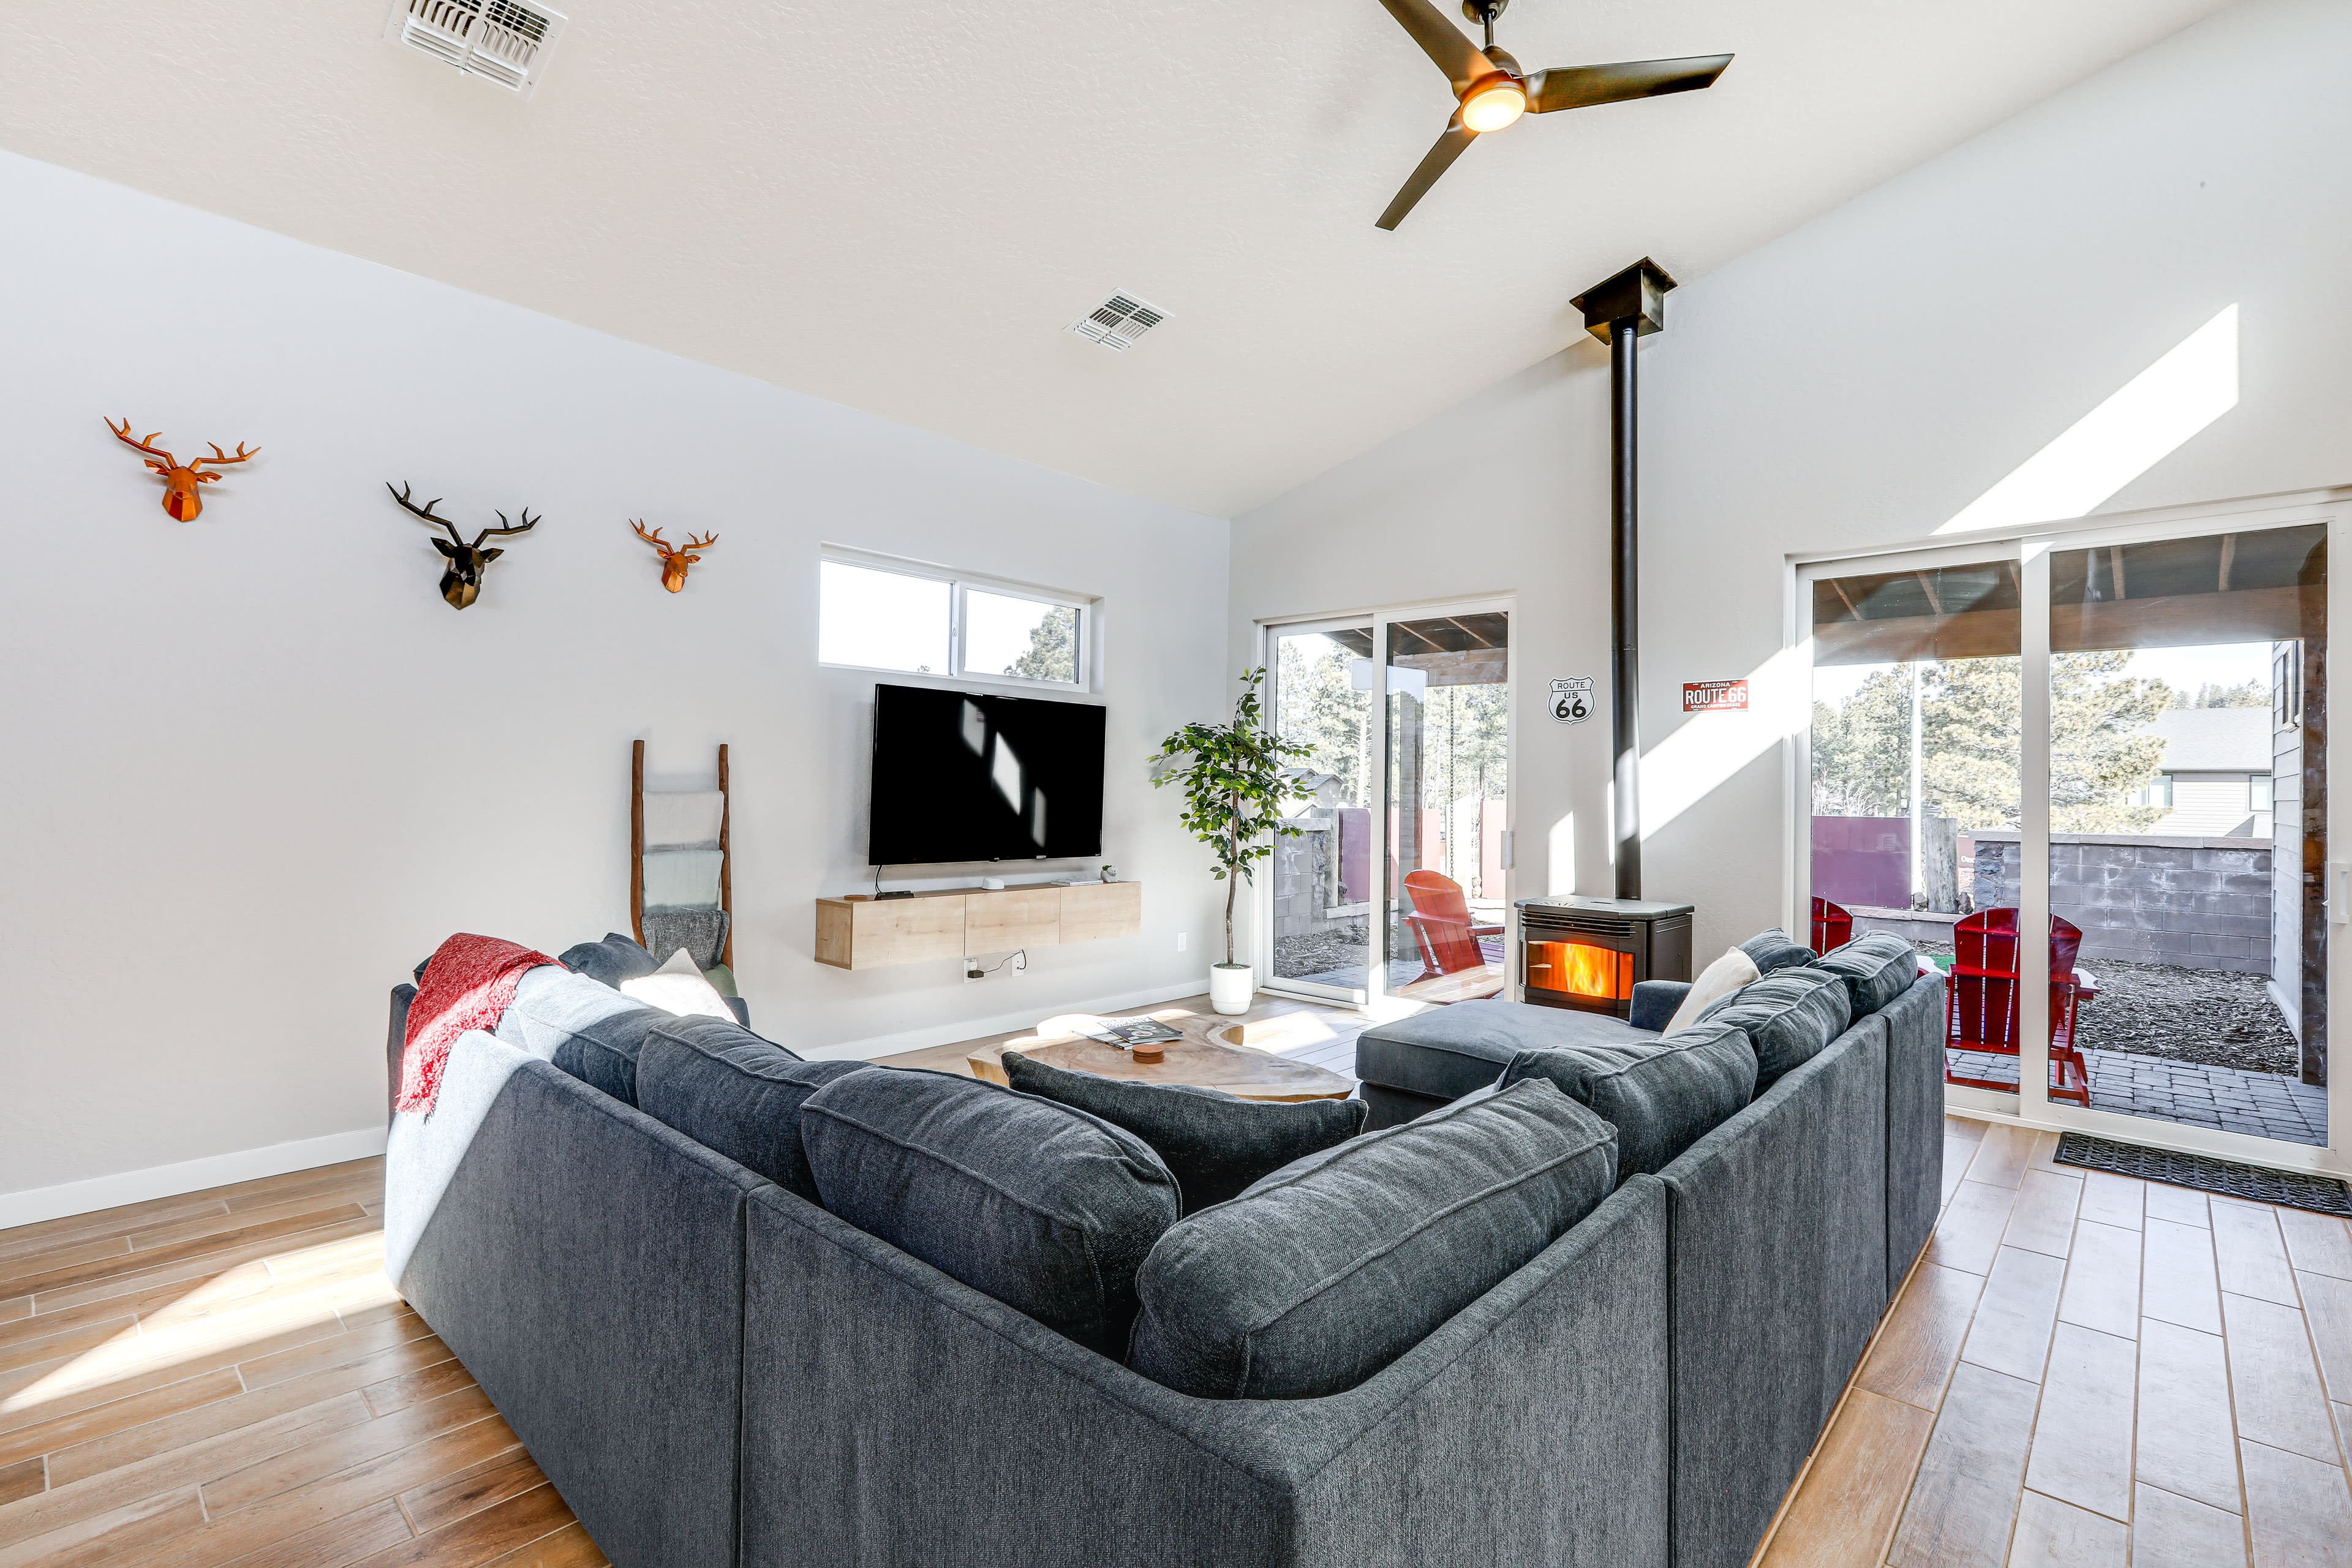 Living Room | Queen Sleeper Sofa | Free WiFi | Smart TV | Pellet Stove